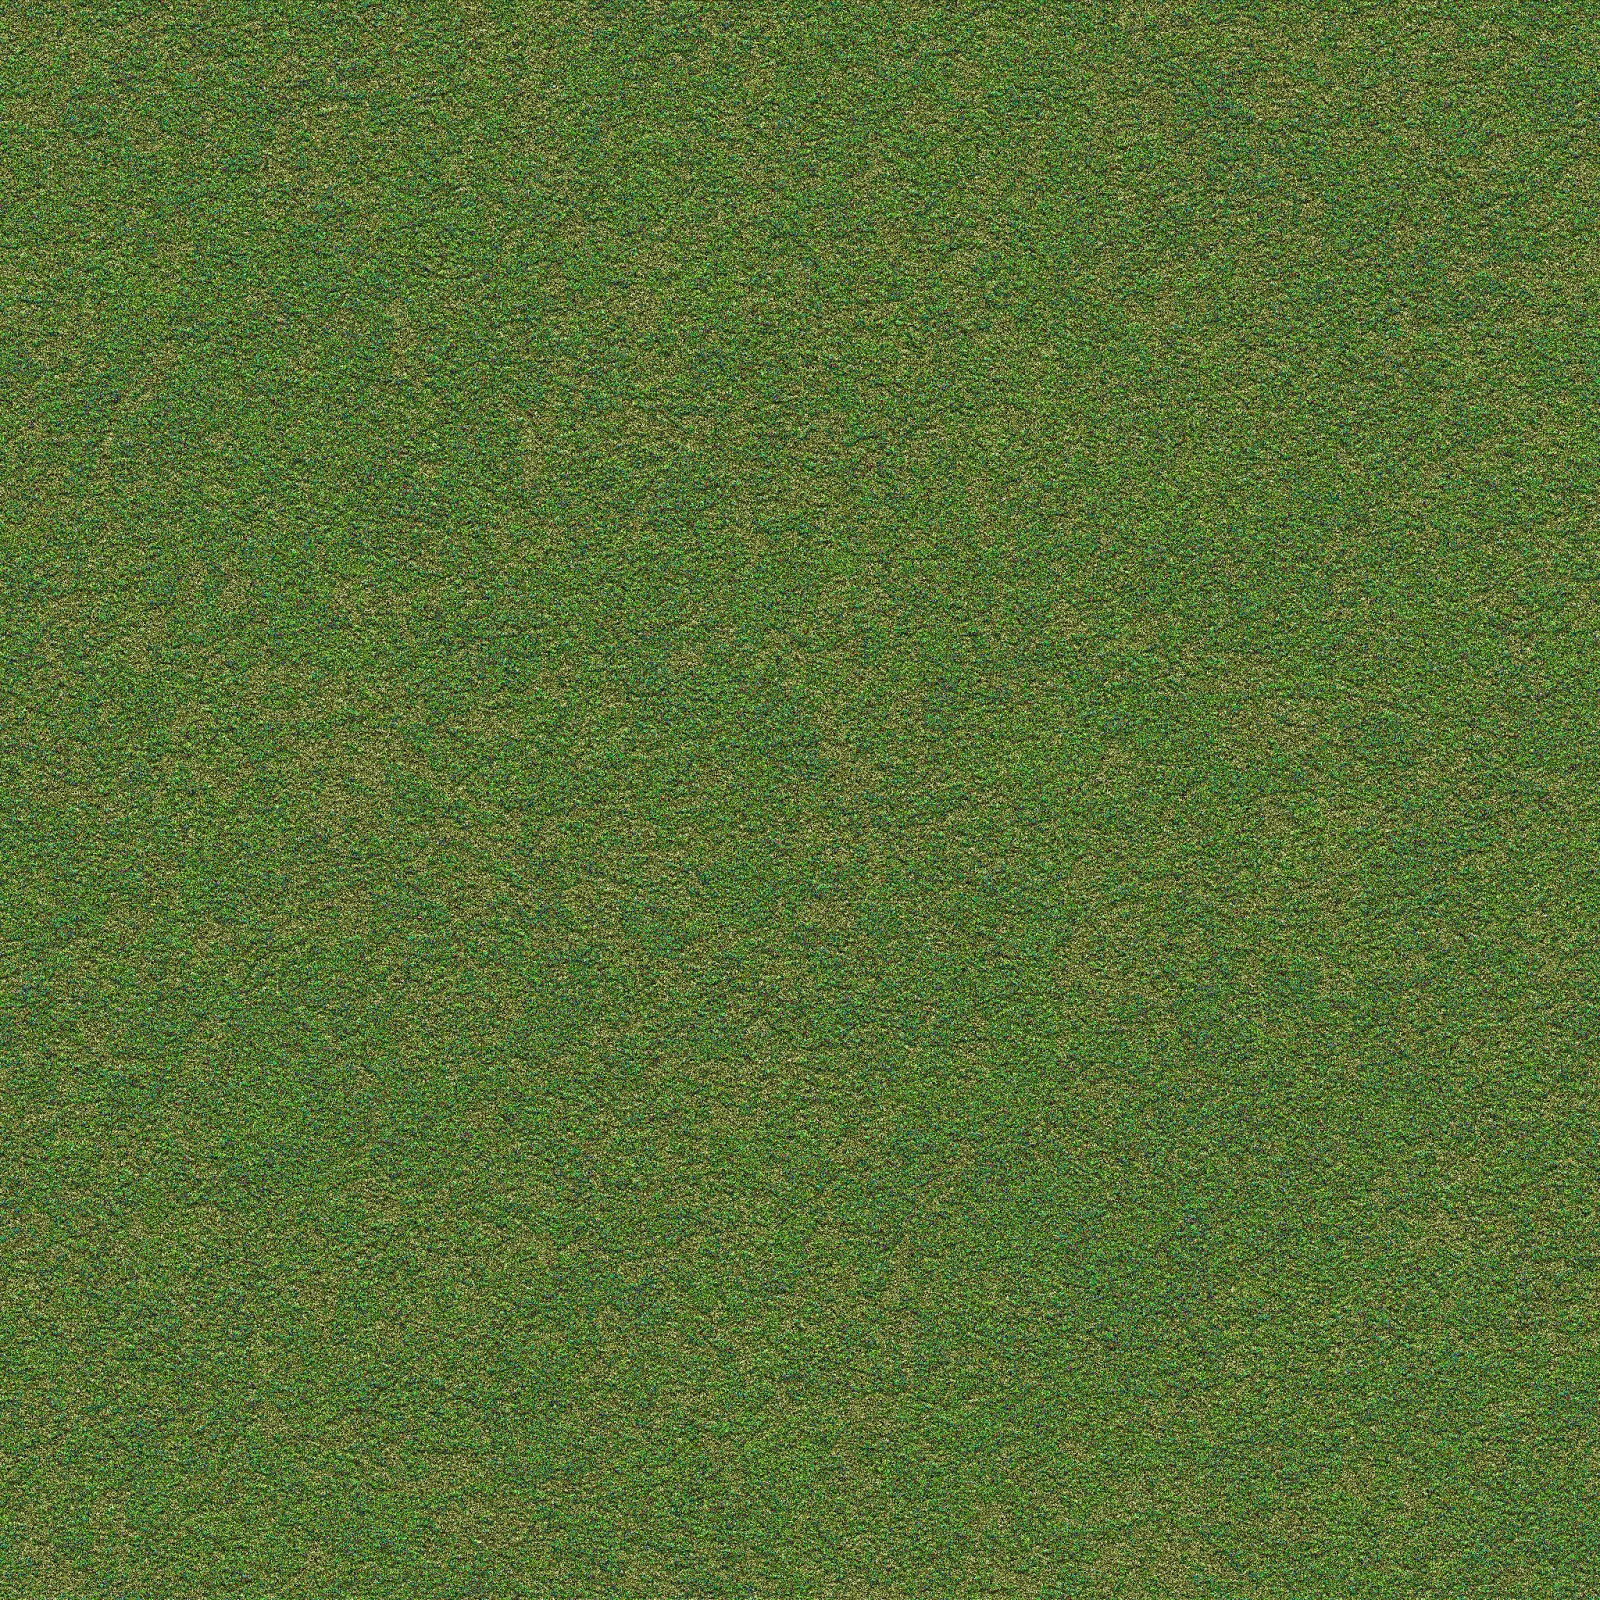 Dark_Green_grass_ground_land_dirt_aerial_top_seamless_texture